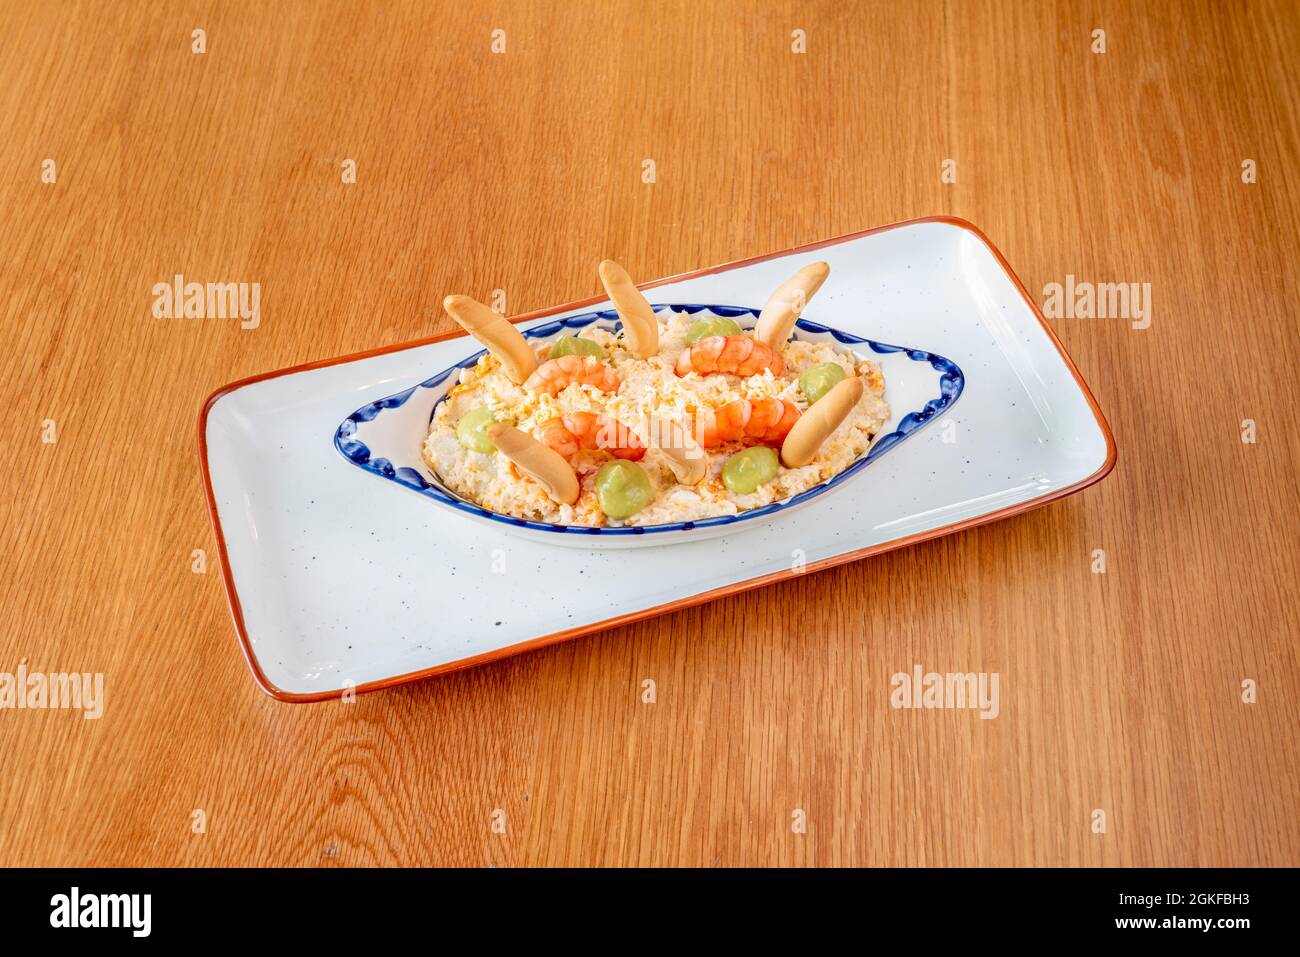 Salade russe aux croûtons, crevettes cuites et quelques touches d'avocat sur une jolie assiette à bord bleu Banque D'Images